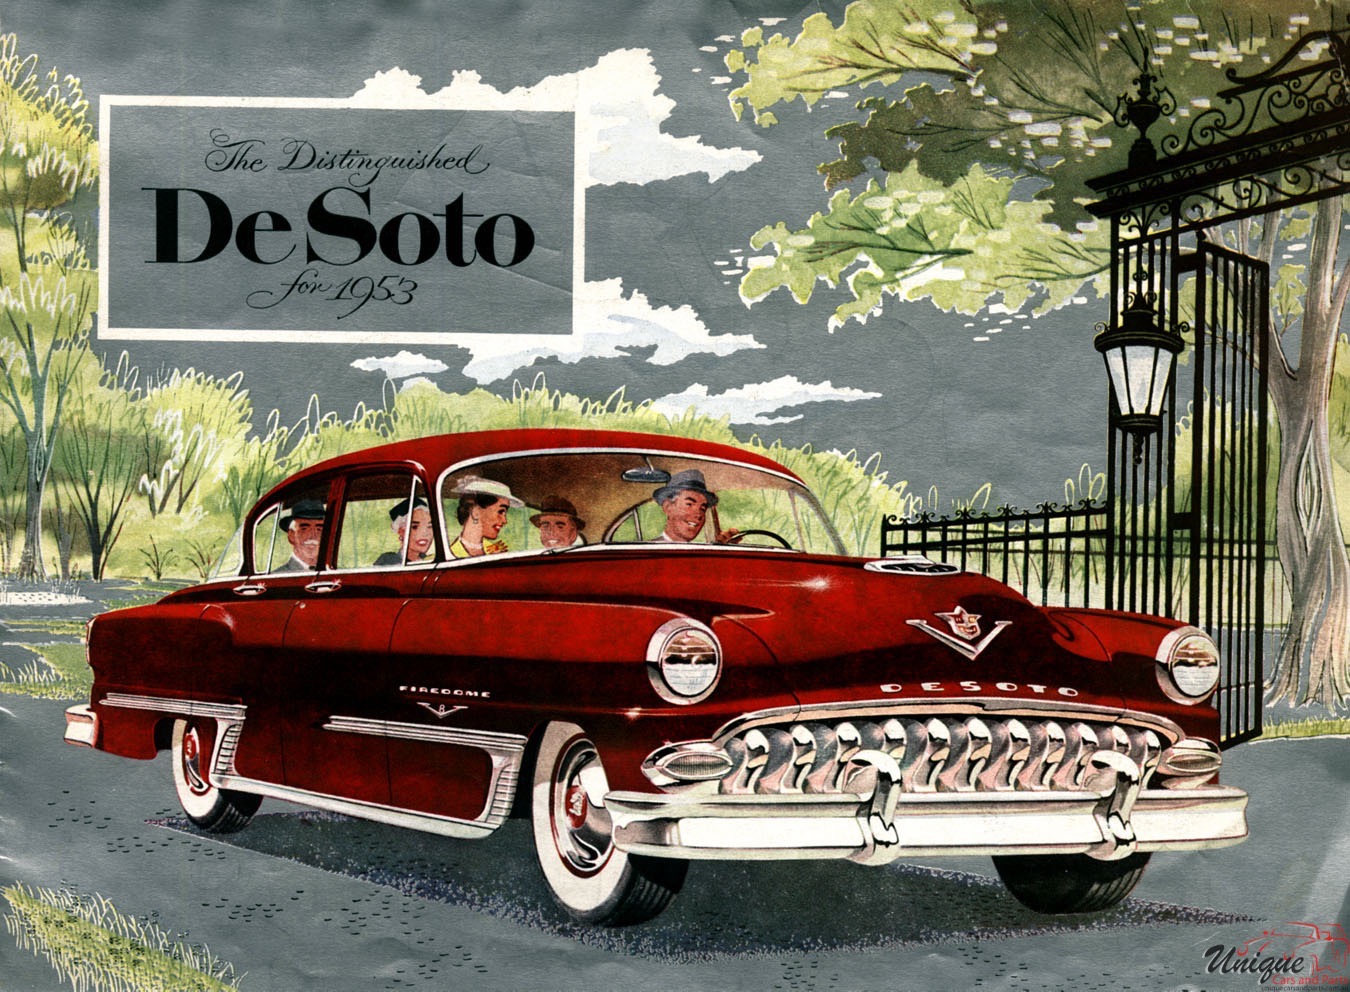 1953 DeSoto Brochure